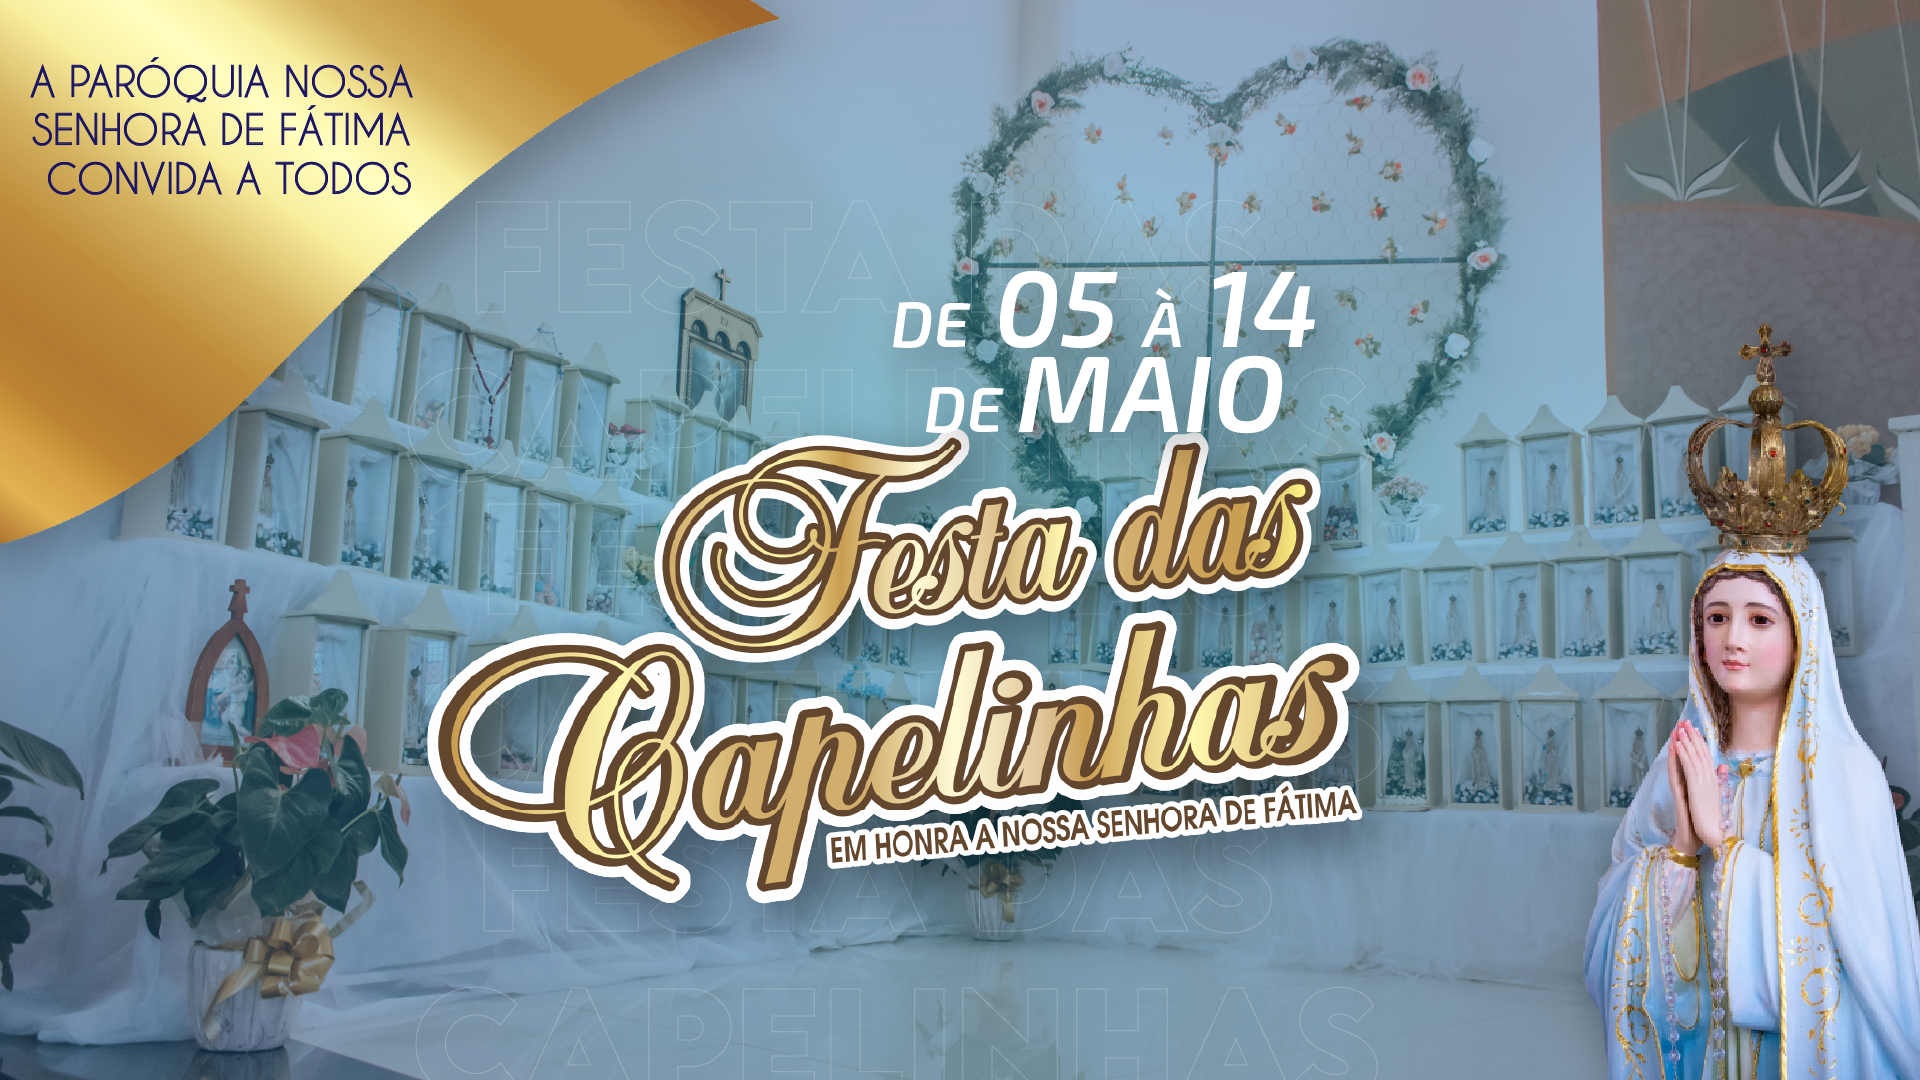 Guaraniaçu - Paróquia Nossa Senhora de Fátima convida a todos para a Festa das Capelinhas